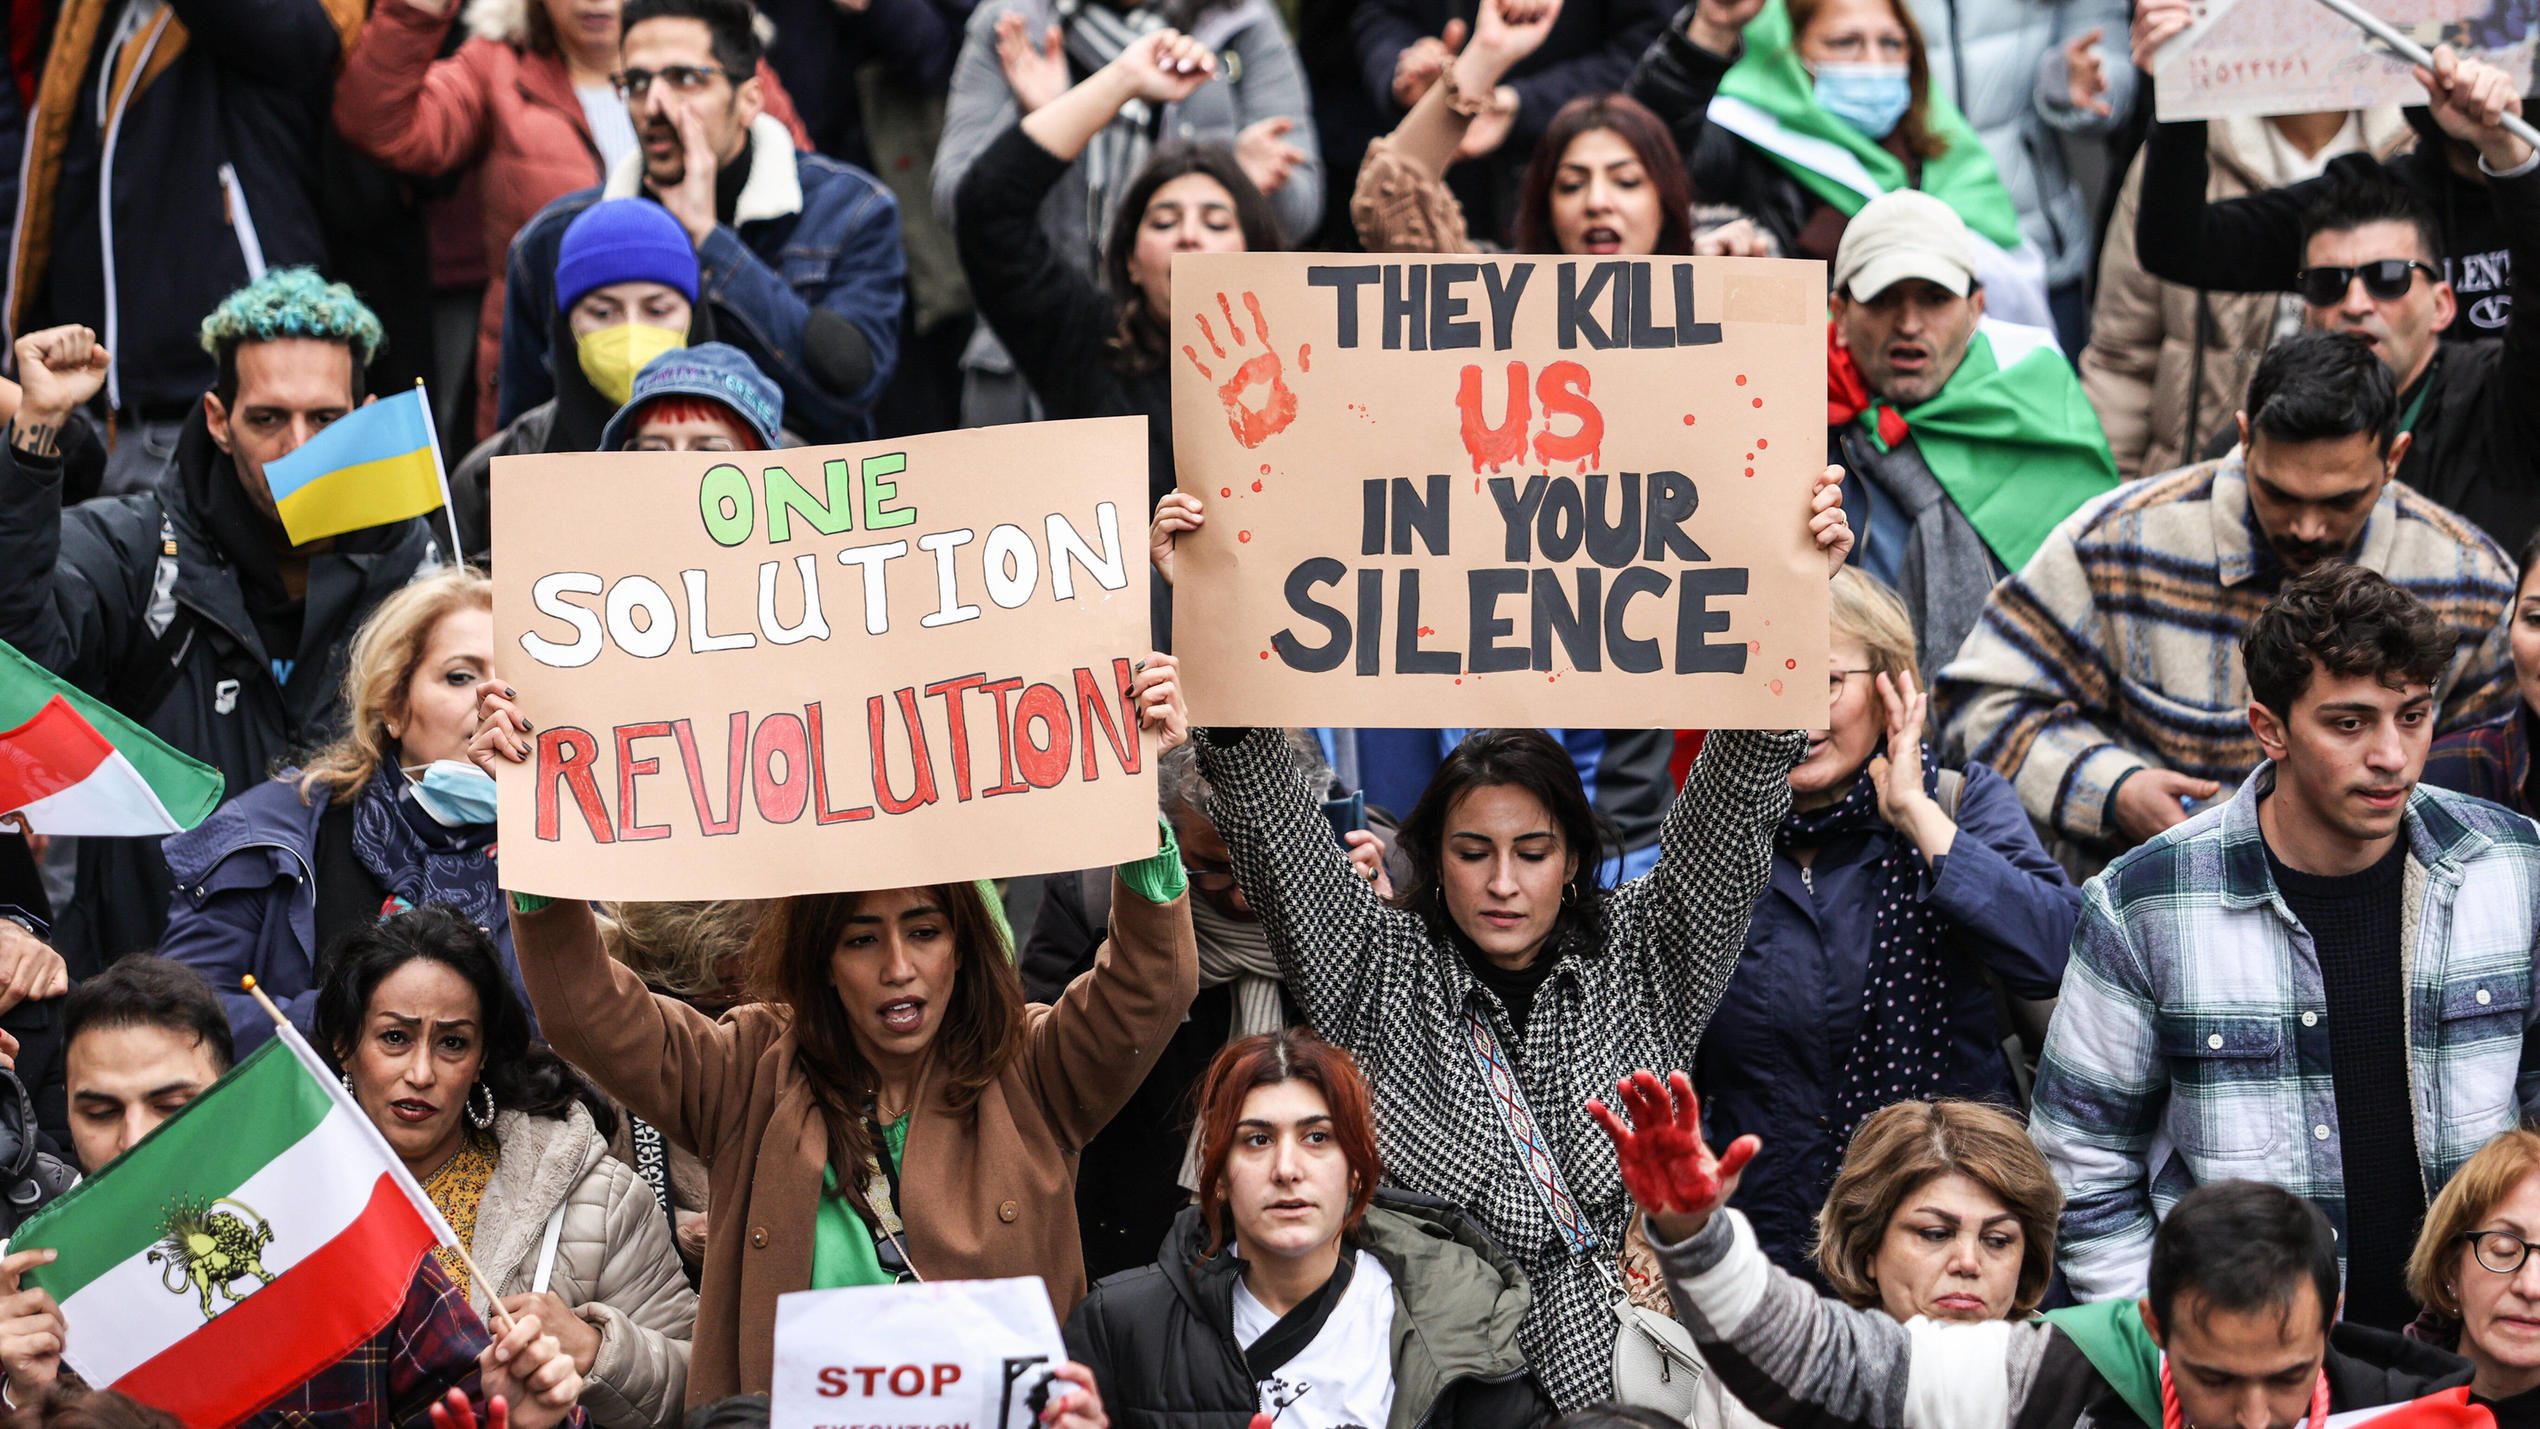  Tausende bei Ukraine- und Iran-Demo in Köln Schild: Eine Lösung. Revolution. // Sie töten uns in deinem Schweigen . Tausende Ukraine- und Iran-Anhänger demonstrierten für Menschenrechte, Gleichberechtigung und gegen Krieg in Köln am 05.11.2022. * Si